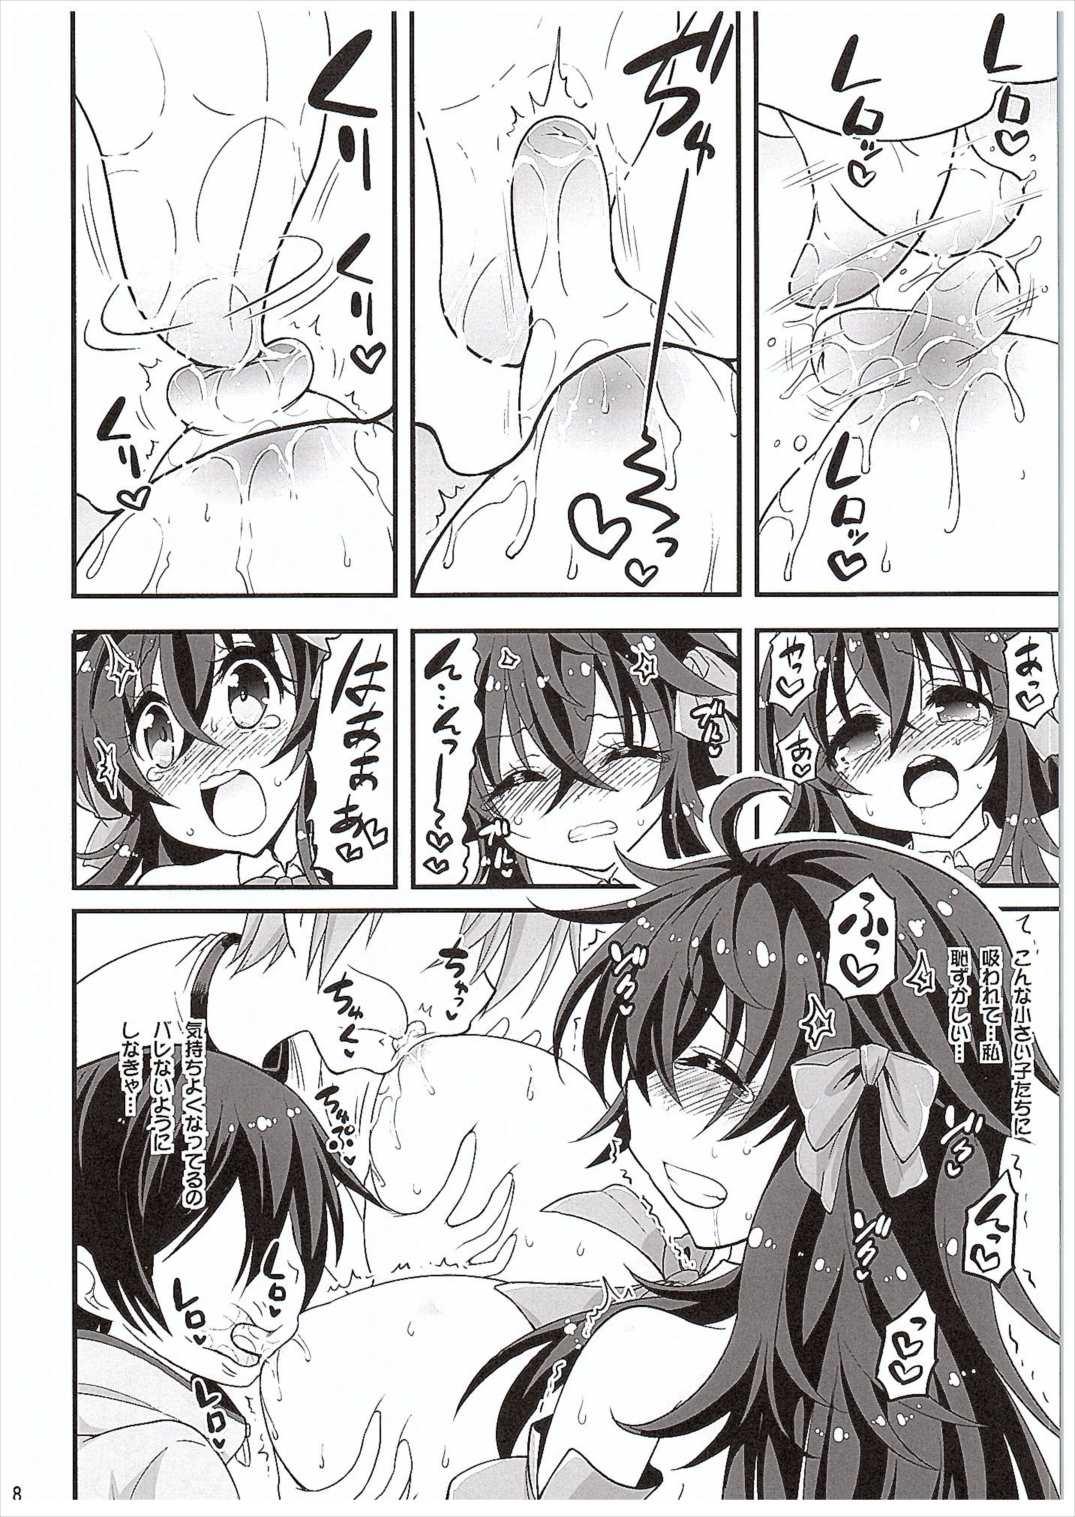 Deep Throat Netoge no Yome to Shota no Himitsu Training - Netoge no yome wa onnanoko ja nai to omotta Gaystraight - Page 7